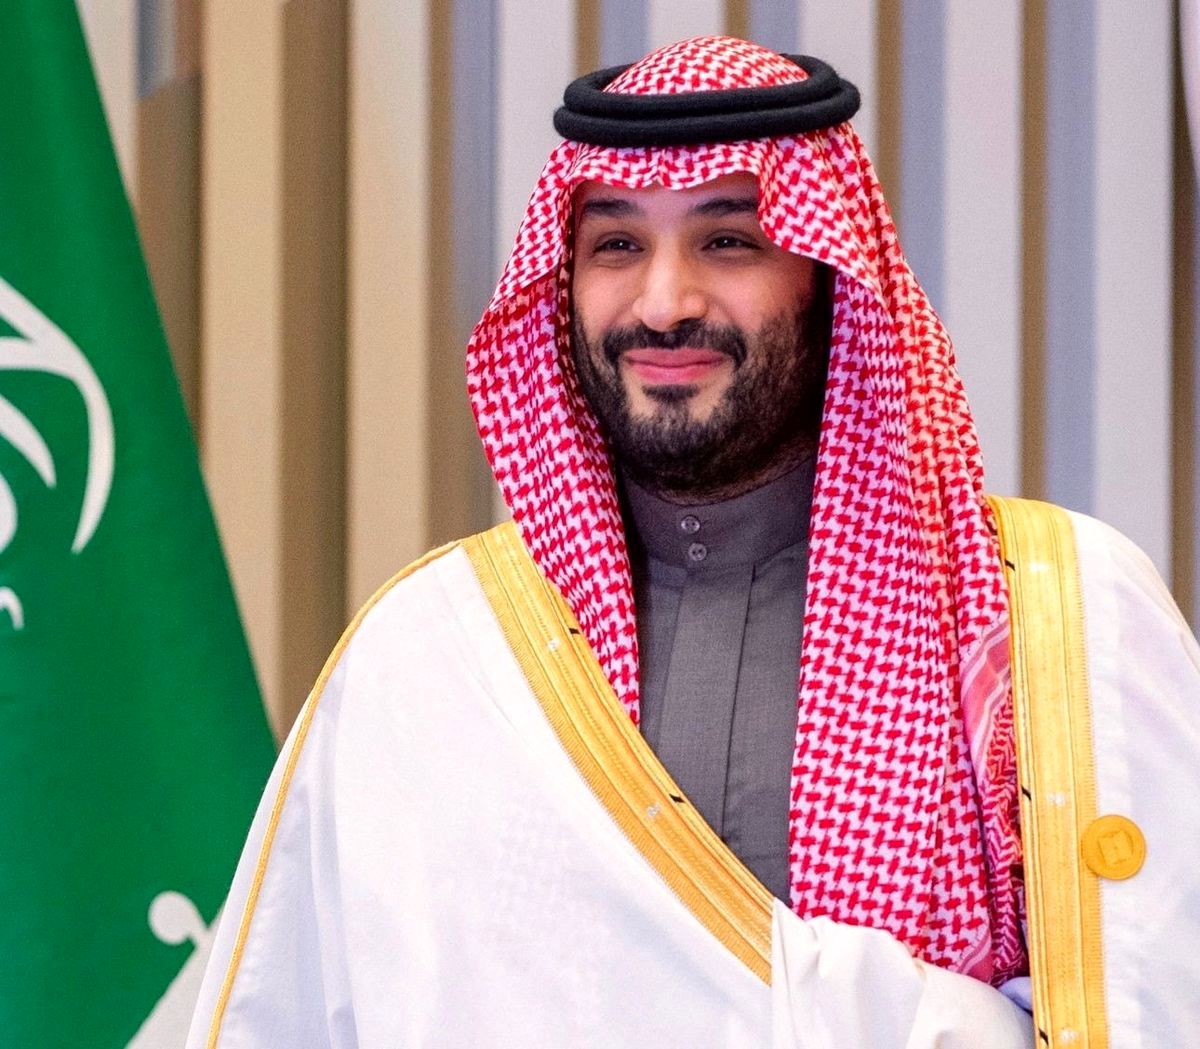 تیرگی روابط ریاض- واشنگتن/ عضویت عربستان در سازمان شانگهای 